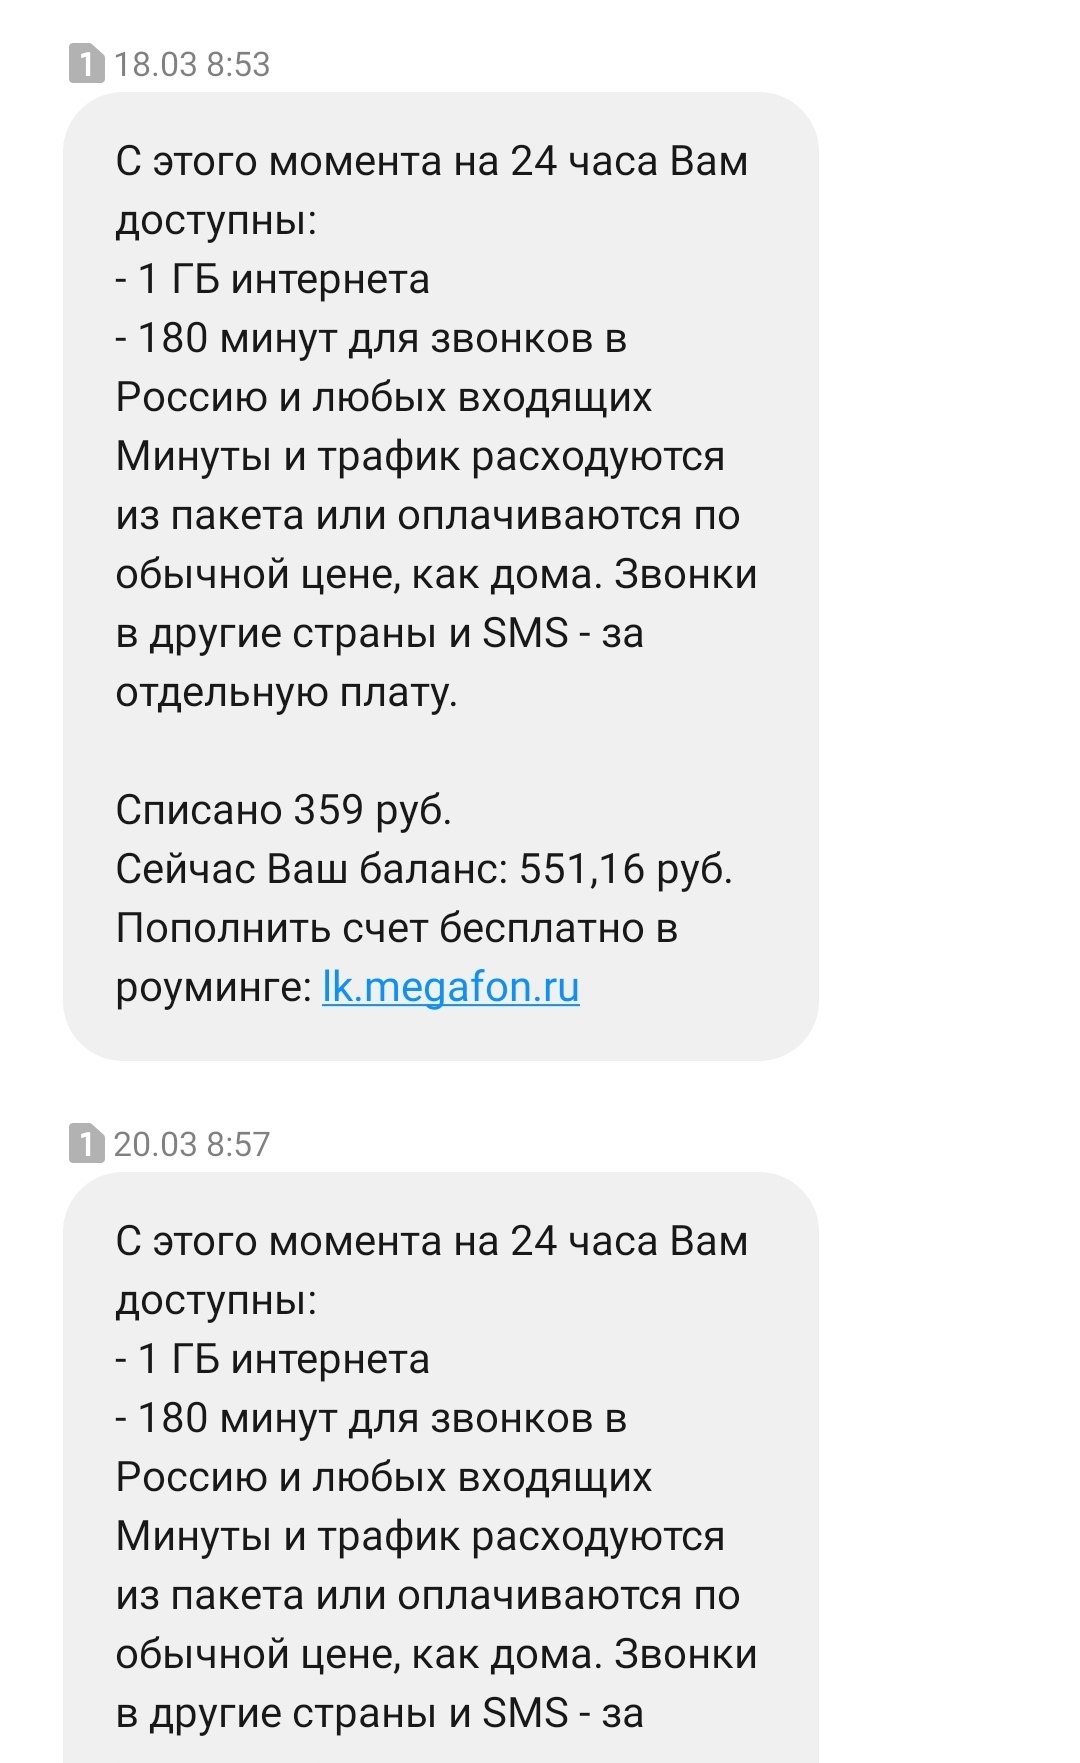 Как Мегафон просто взял и списал более 2000 рублей | Пикабу